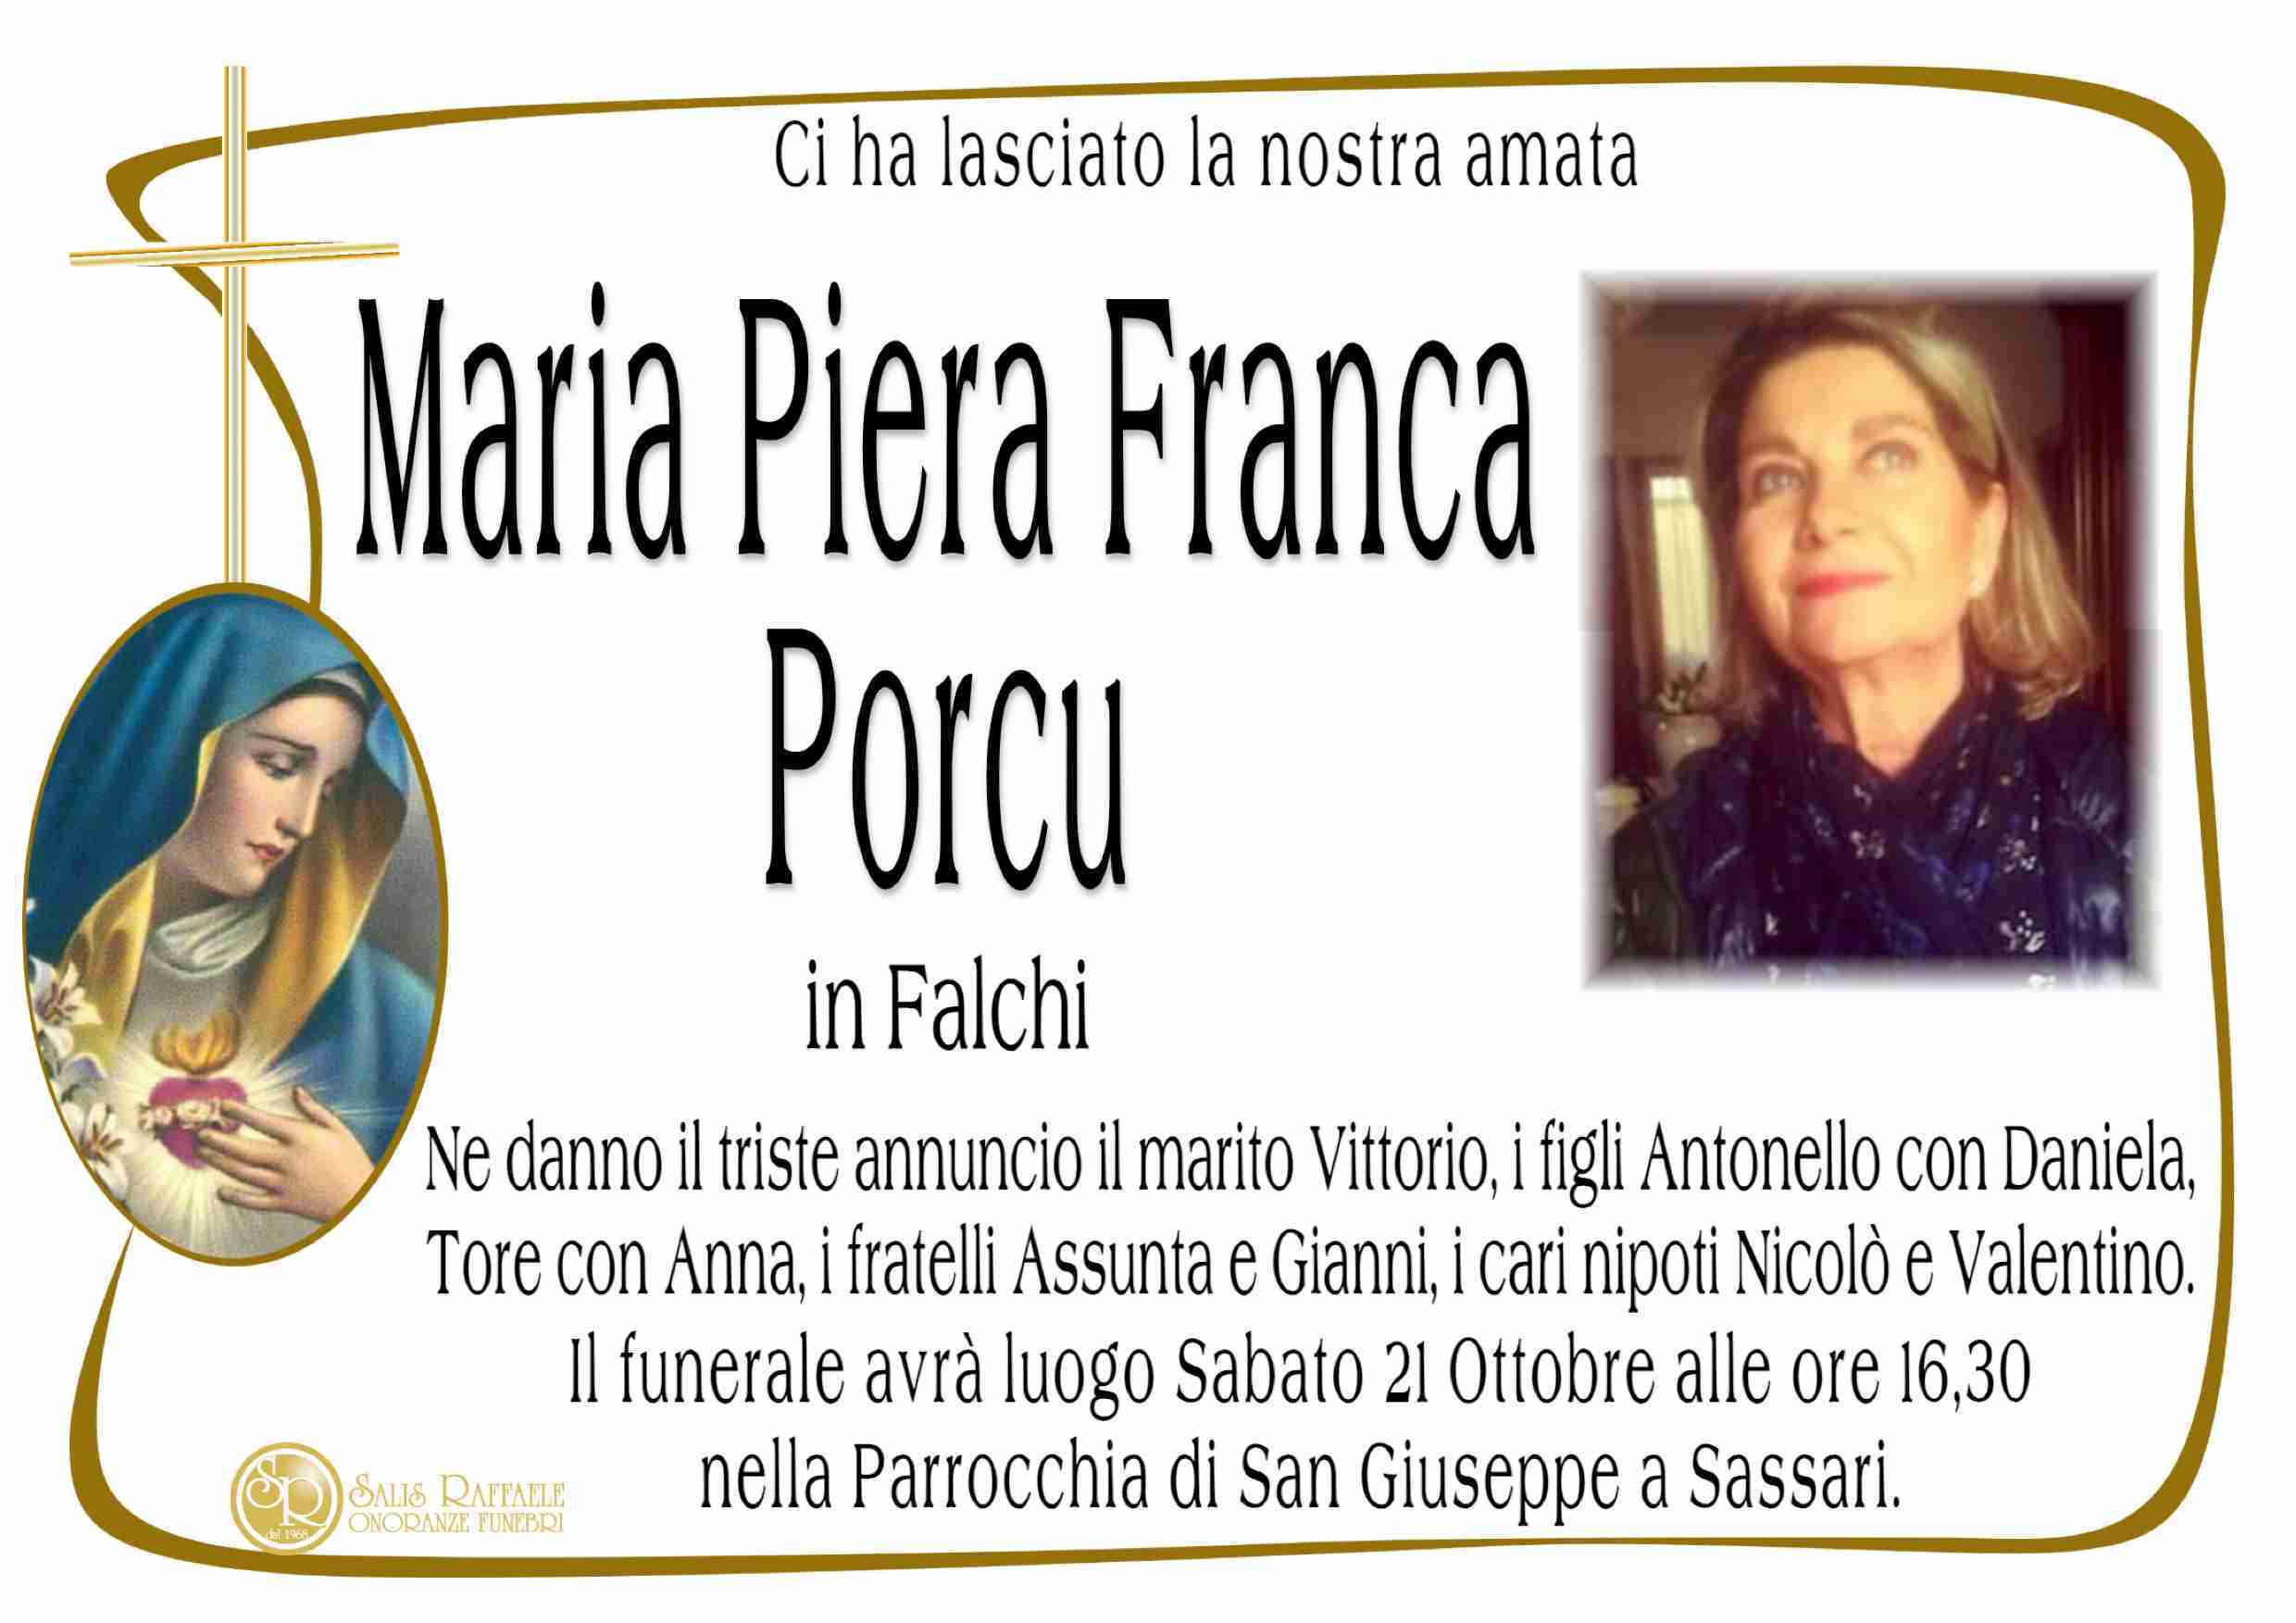 Maria Piera Franca Porcu